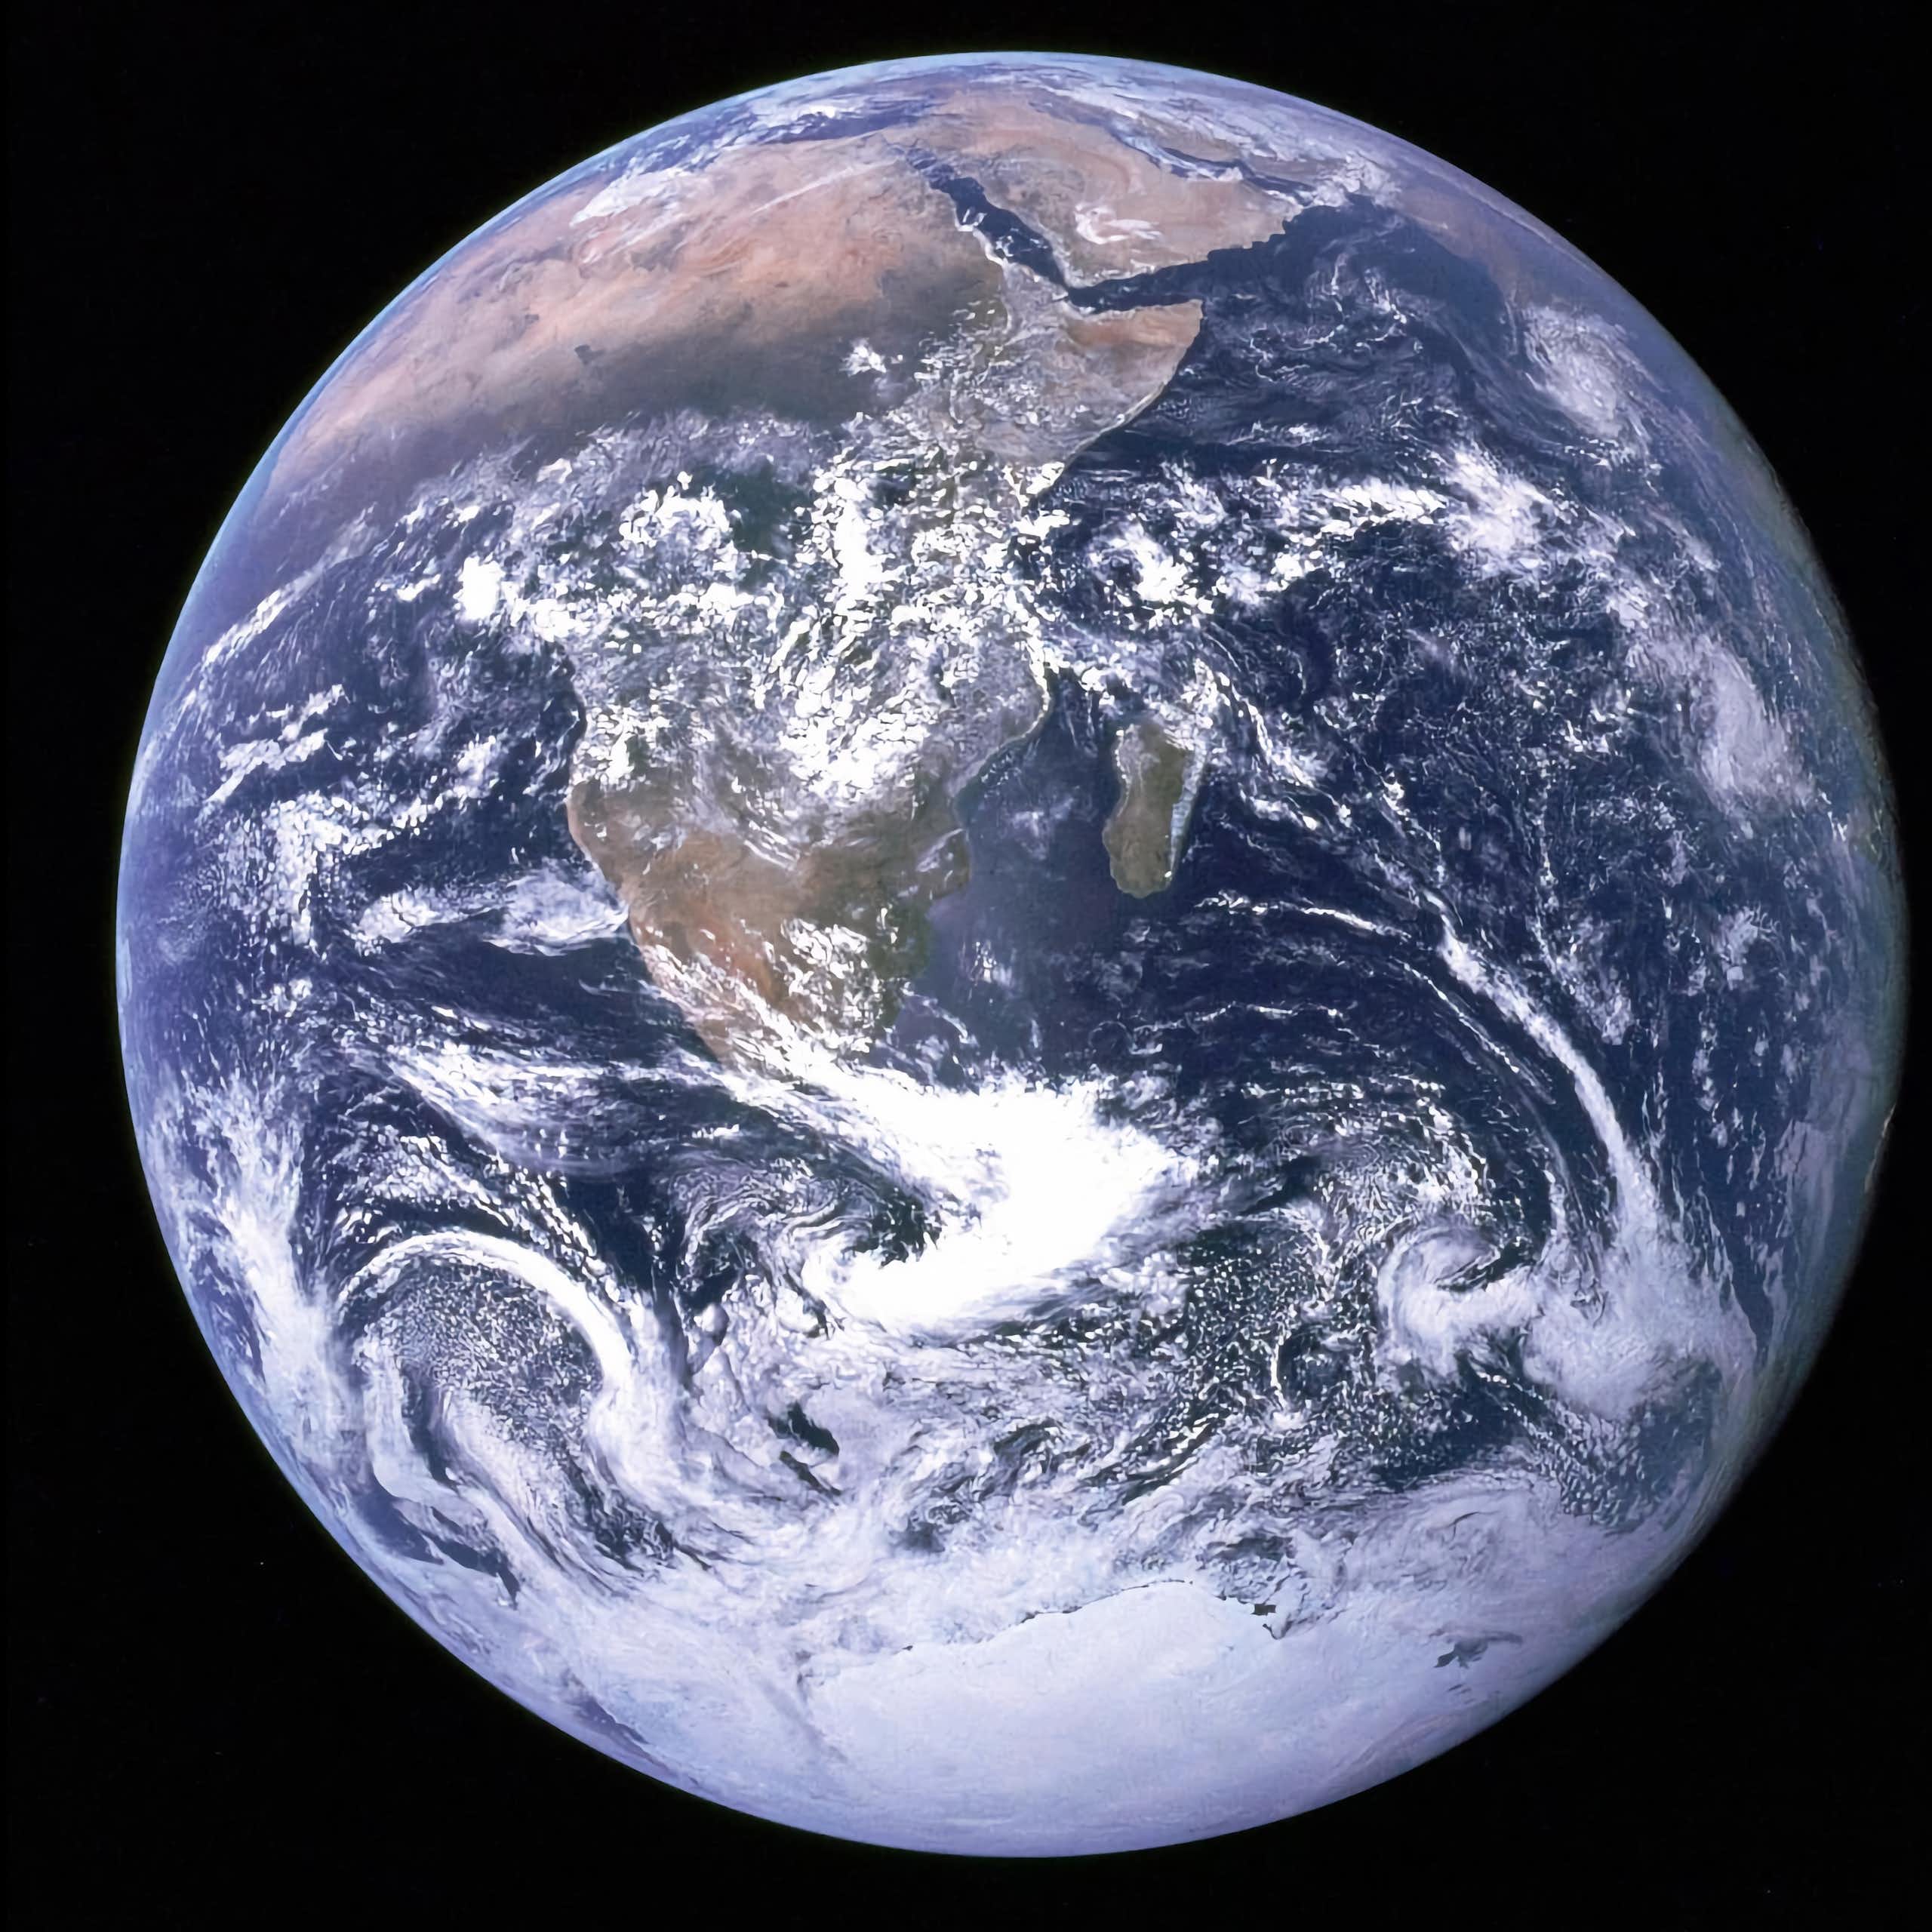 ¿Podrían los extraterrestres considerar la Tierra un mundo habitable?